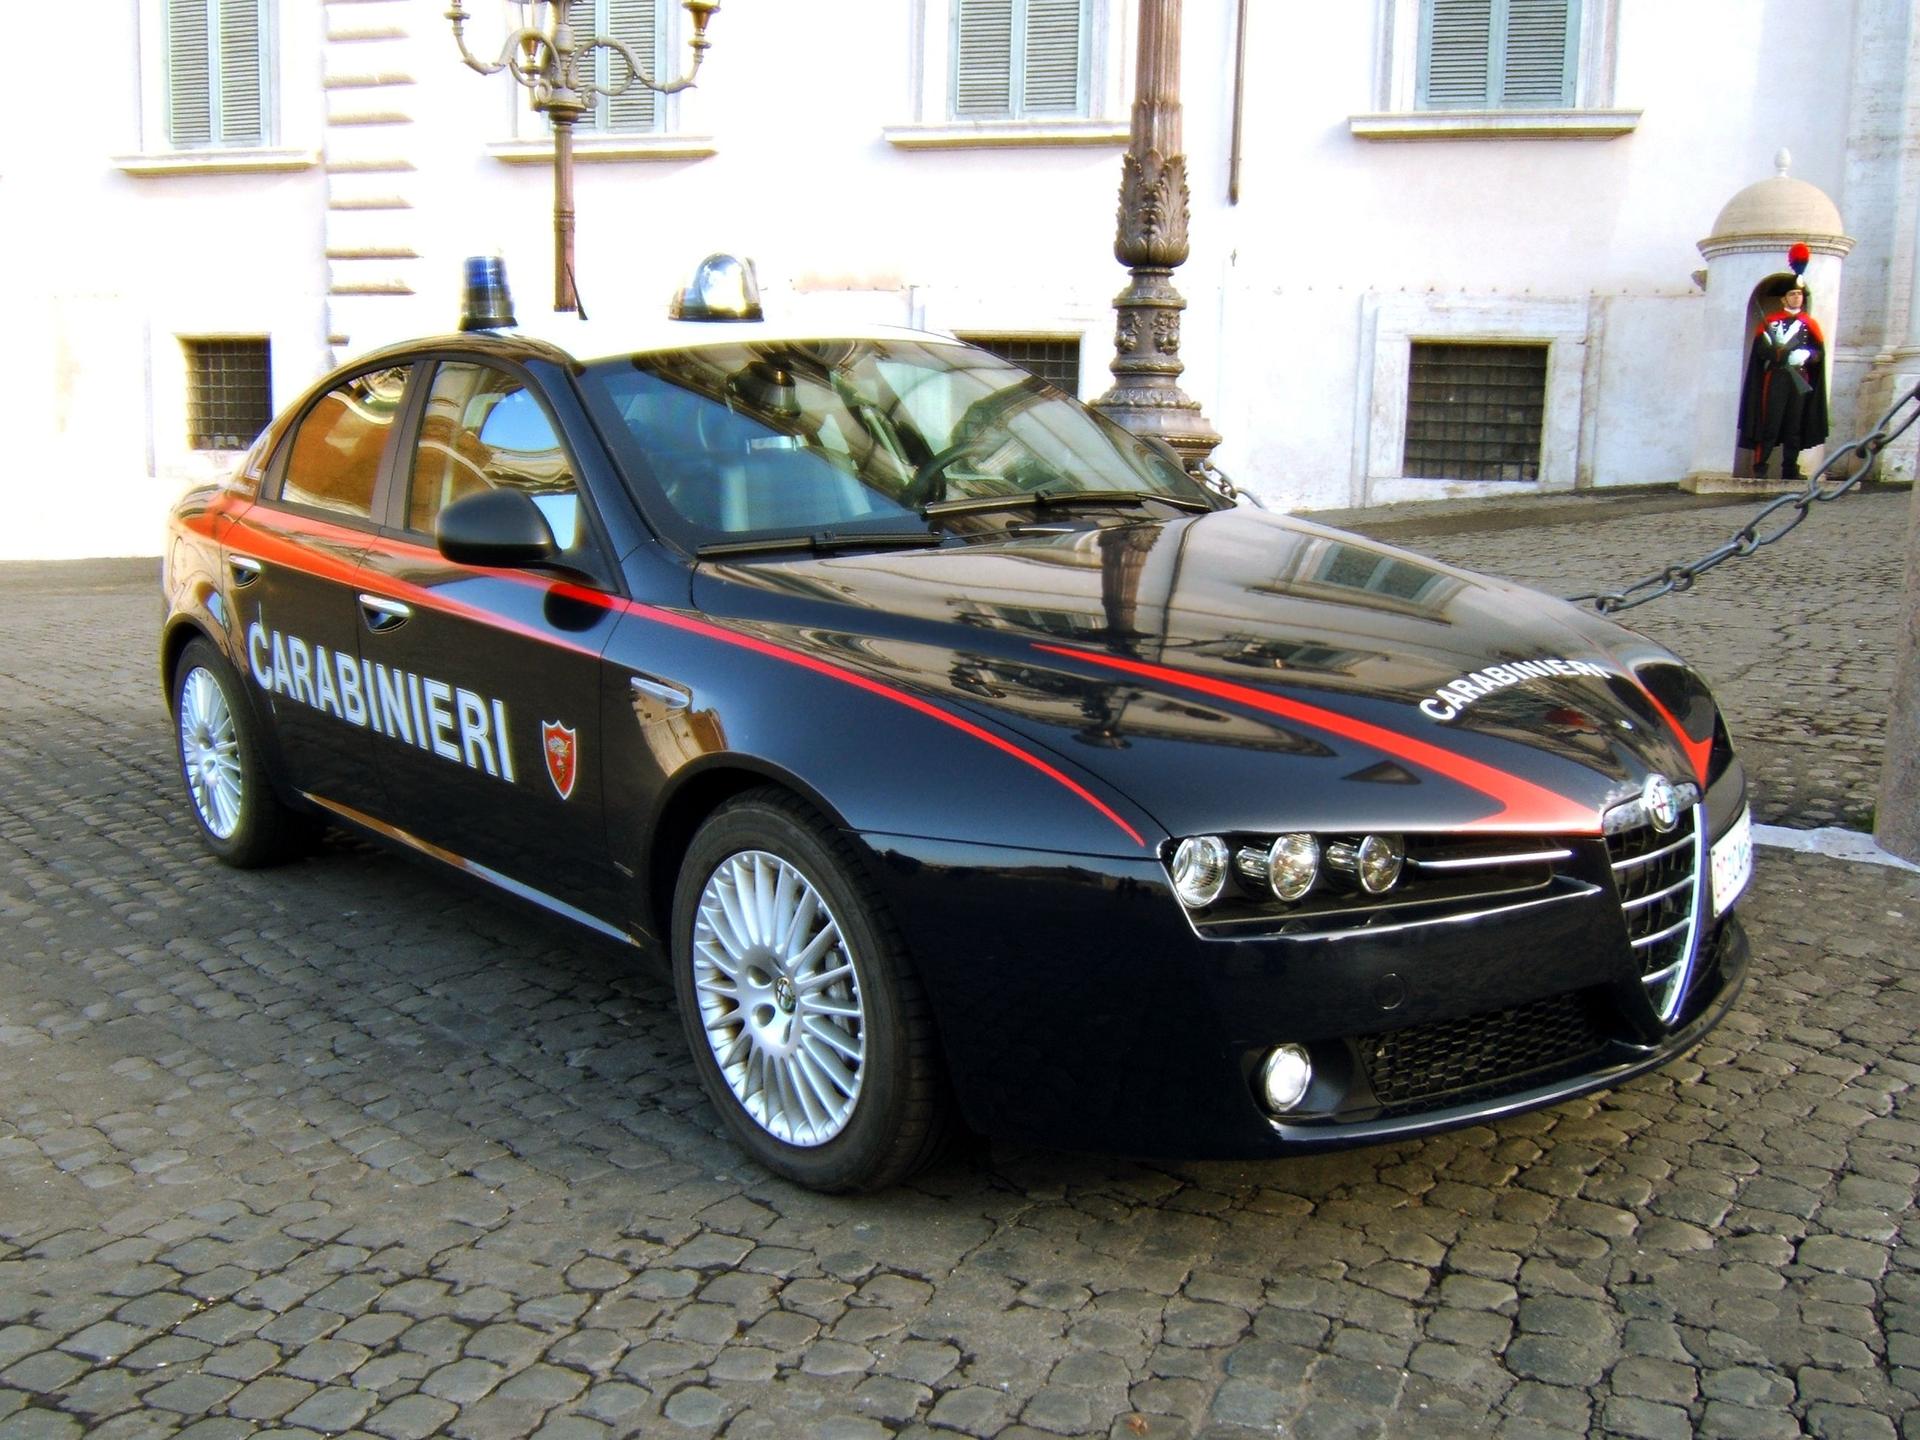 Alfa-Romeo159-Carabinieri.jpeg